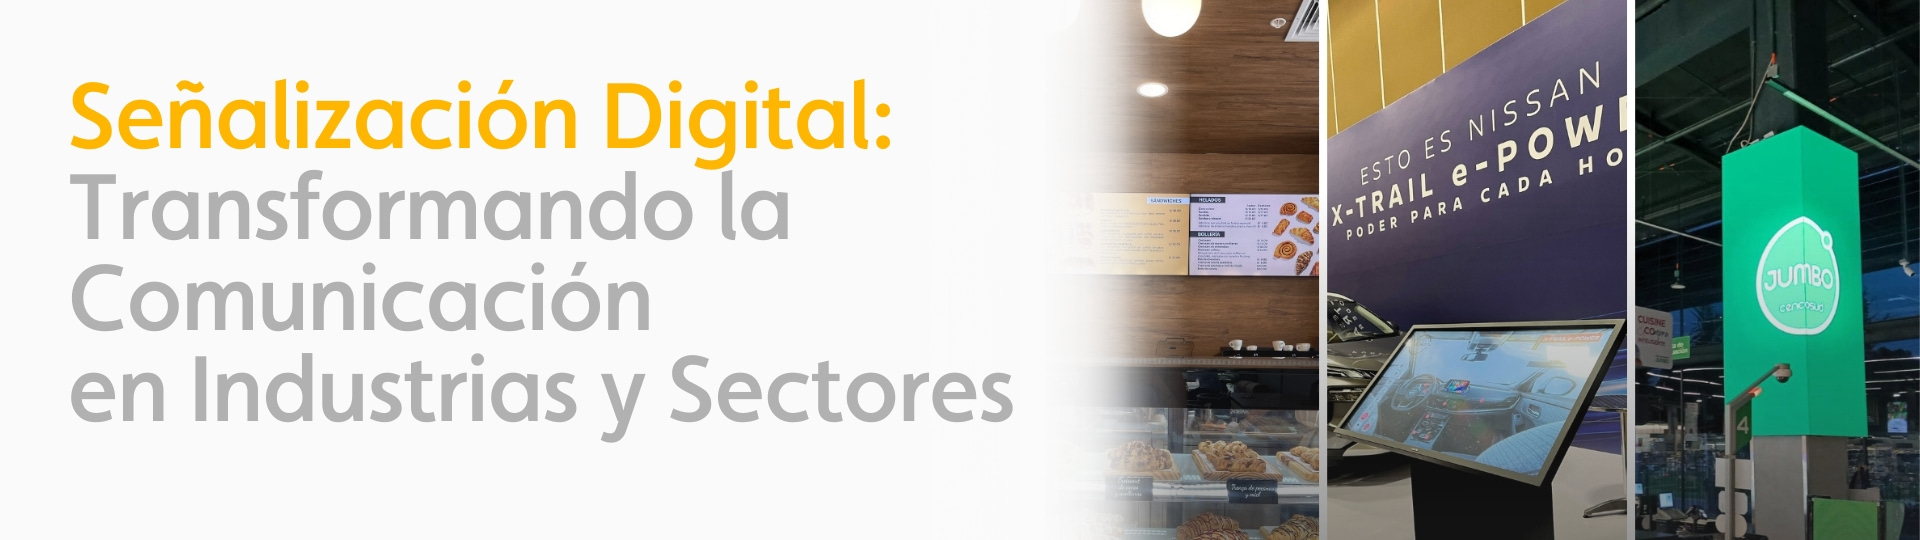 Señalización Digital en Industrias y Sectores